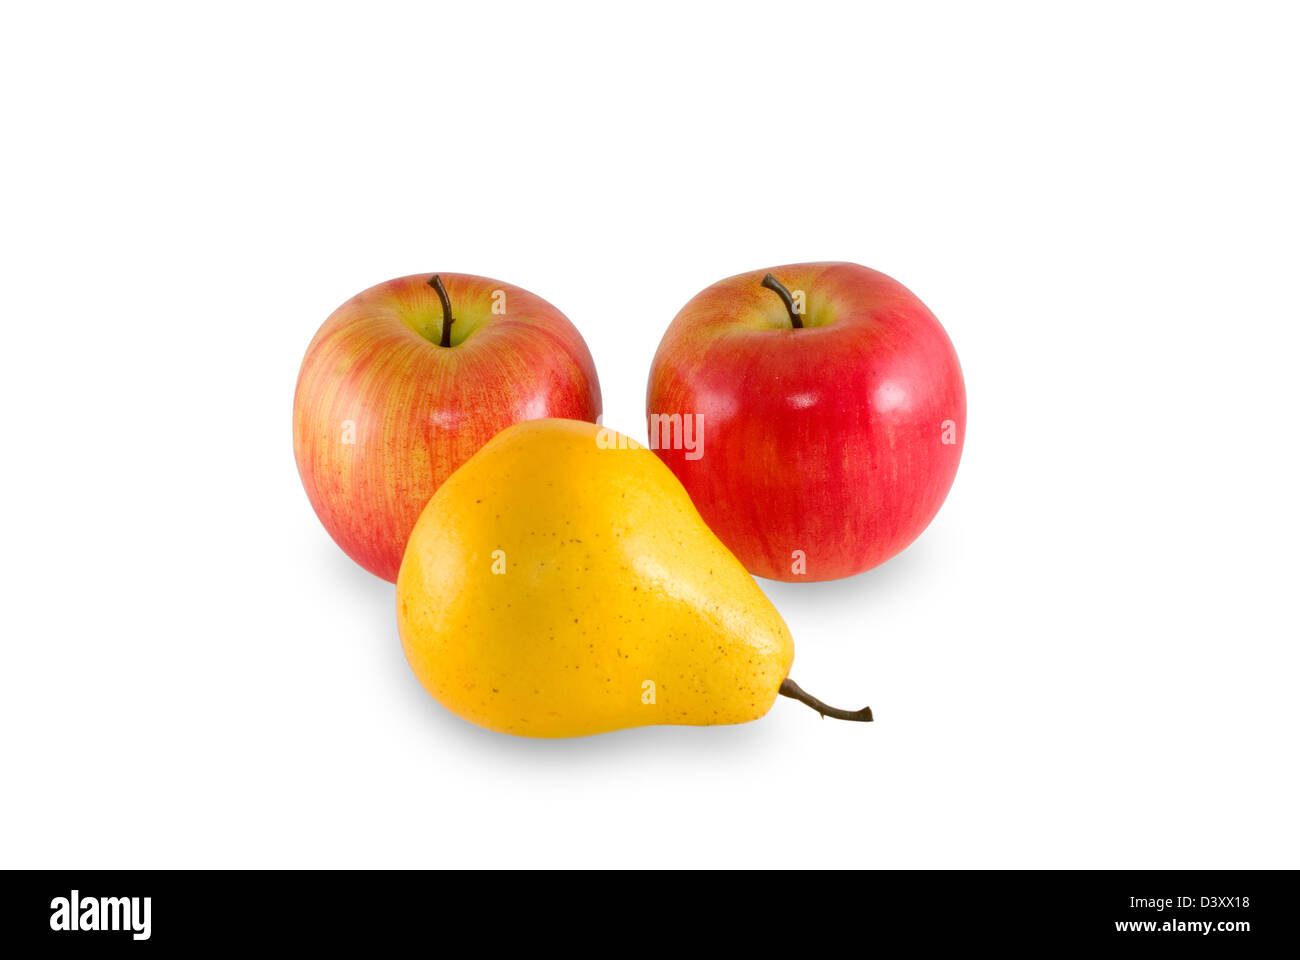 Deux pommes et poires sont photographiés sur le fond blanc Banque D'Images